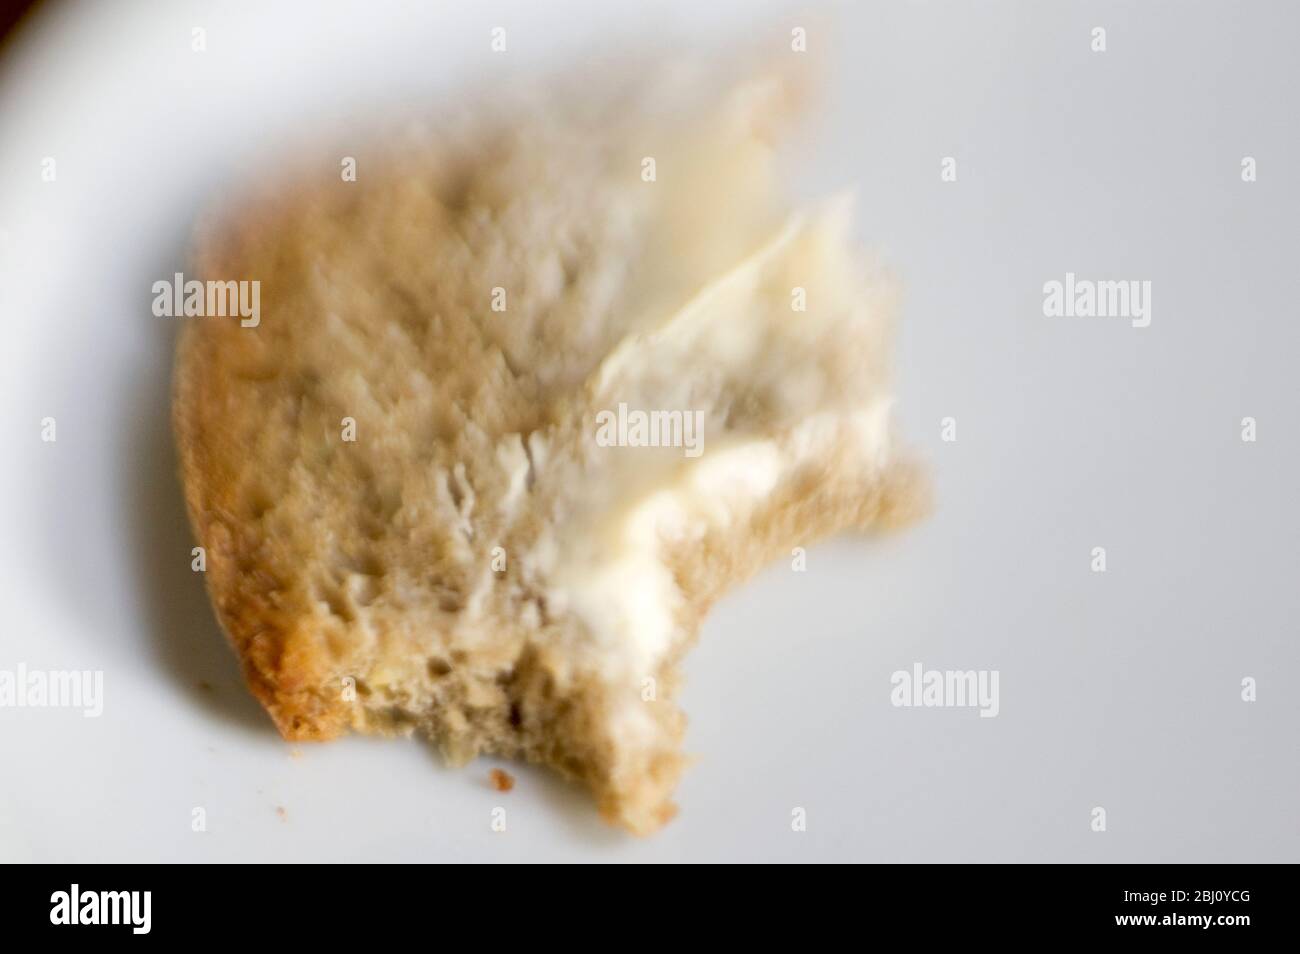 Pezzo di pane al burro con morsi - girato con l'obiettivo lensbaby per un effetto di messa a fuoco breve - Foto Stock